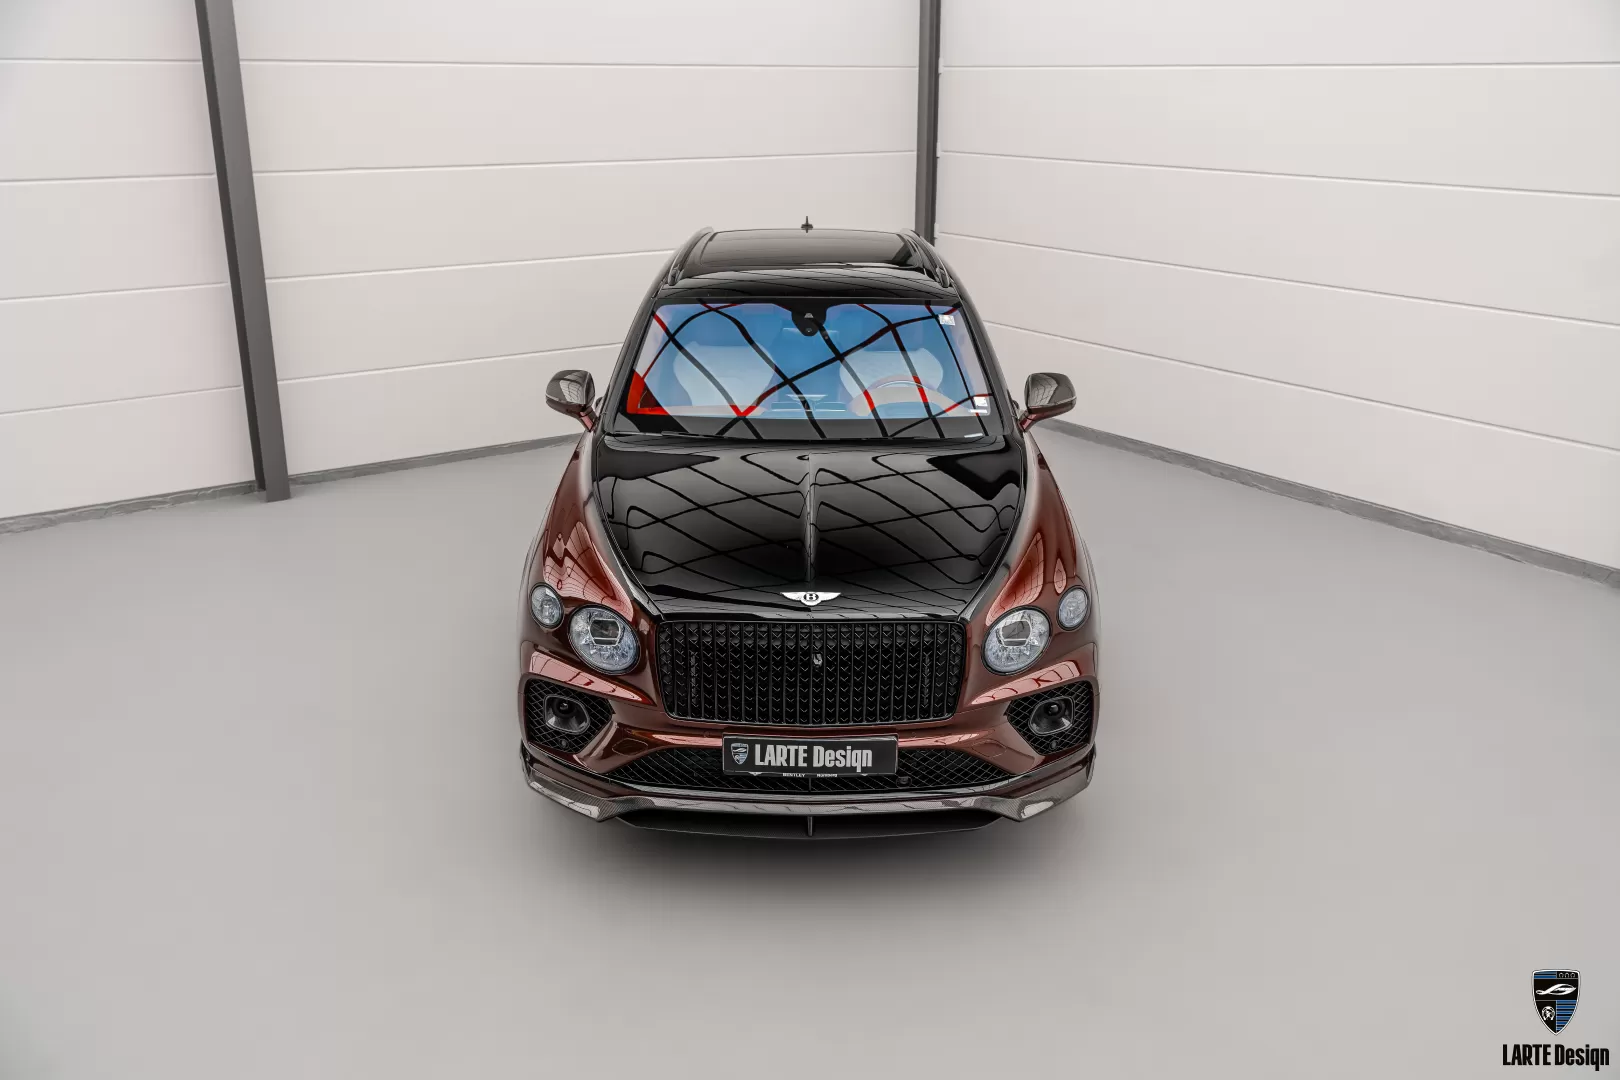 Bentley body kit in carbon fiber